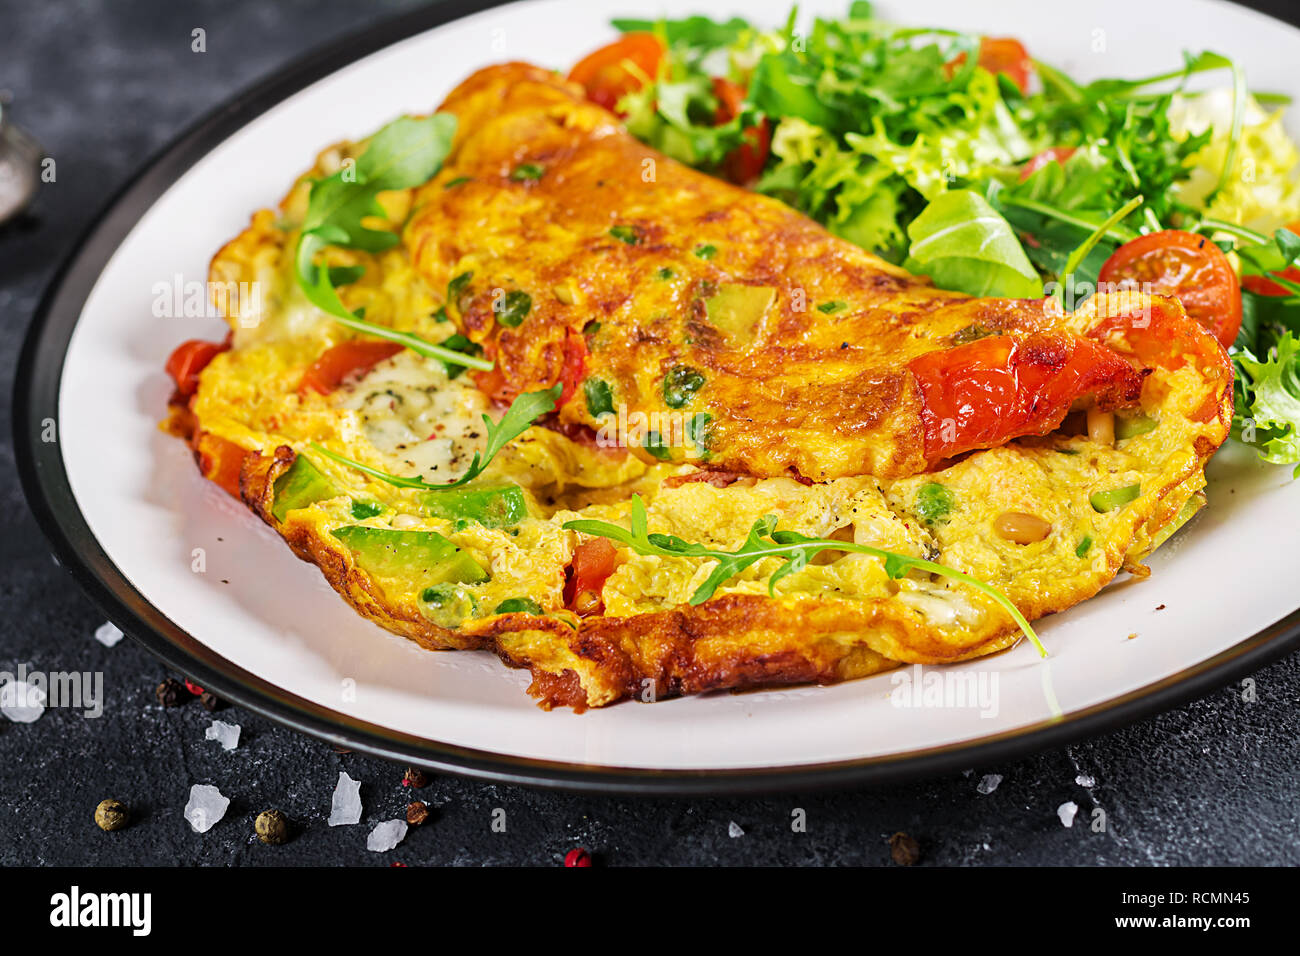 Frühstück. Omelett mit Tomaten, Avocado, Blauschimmelkäse und grünen ...